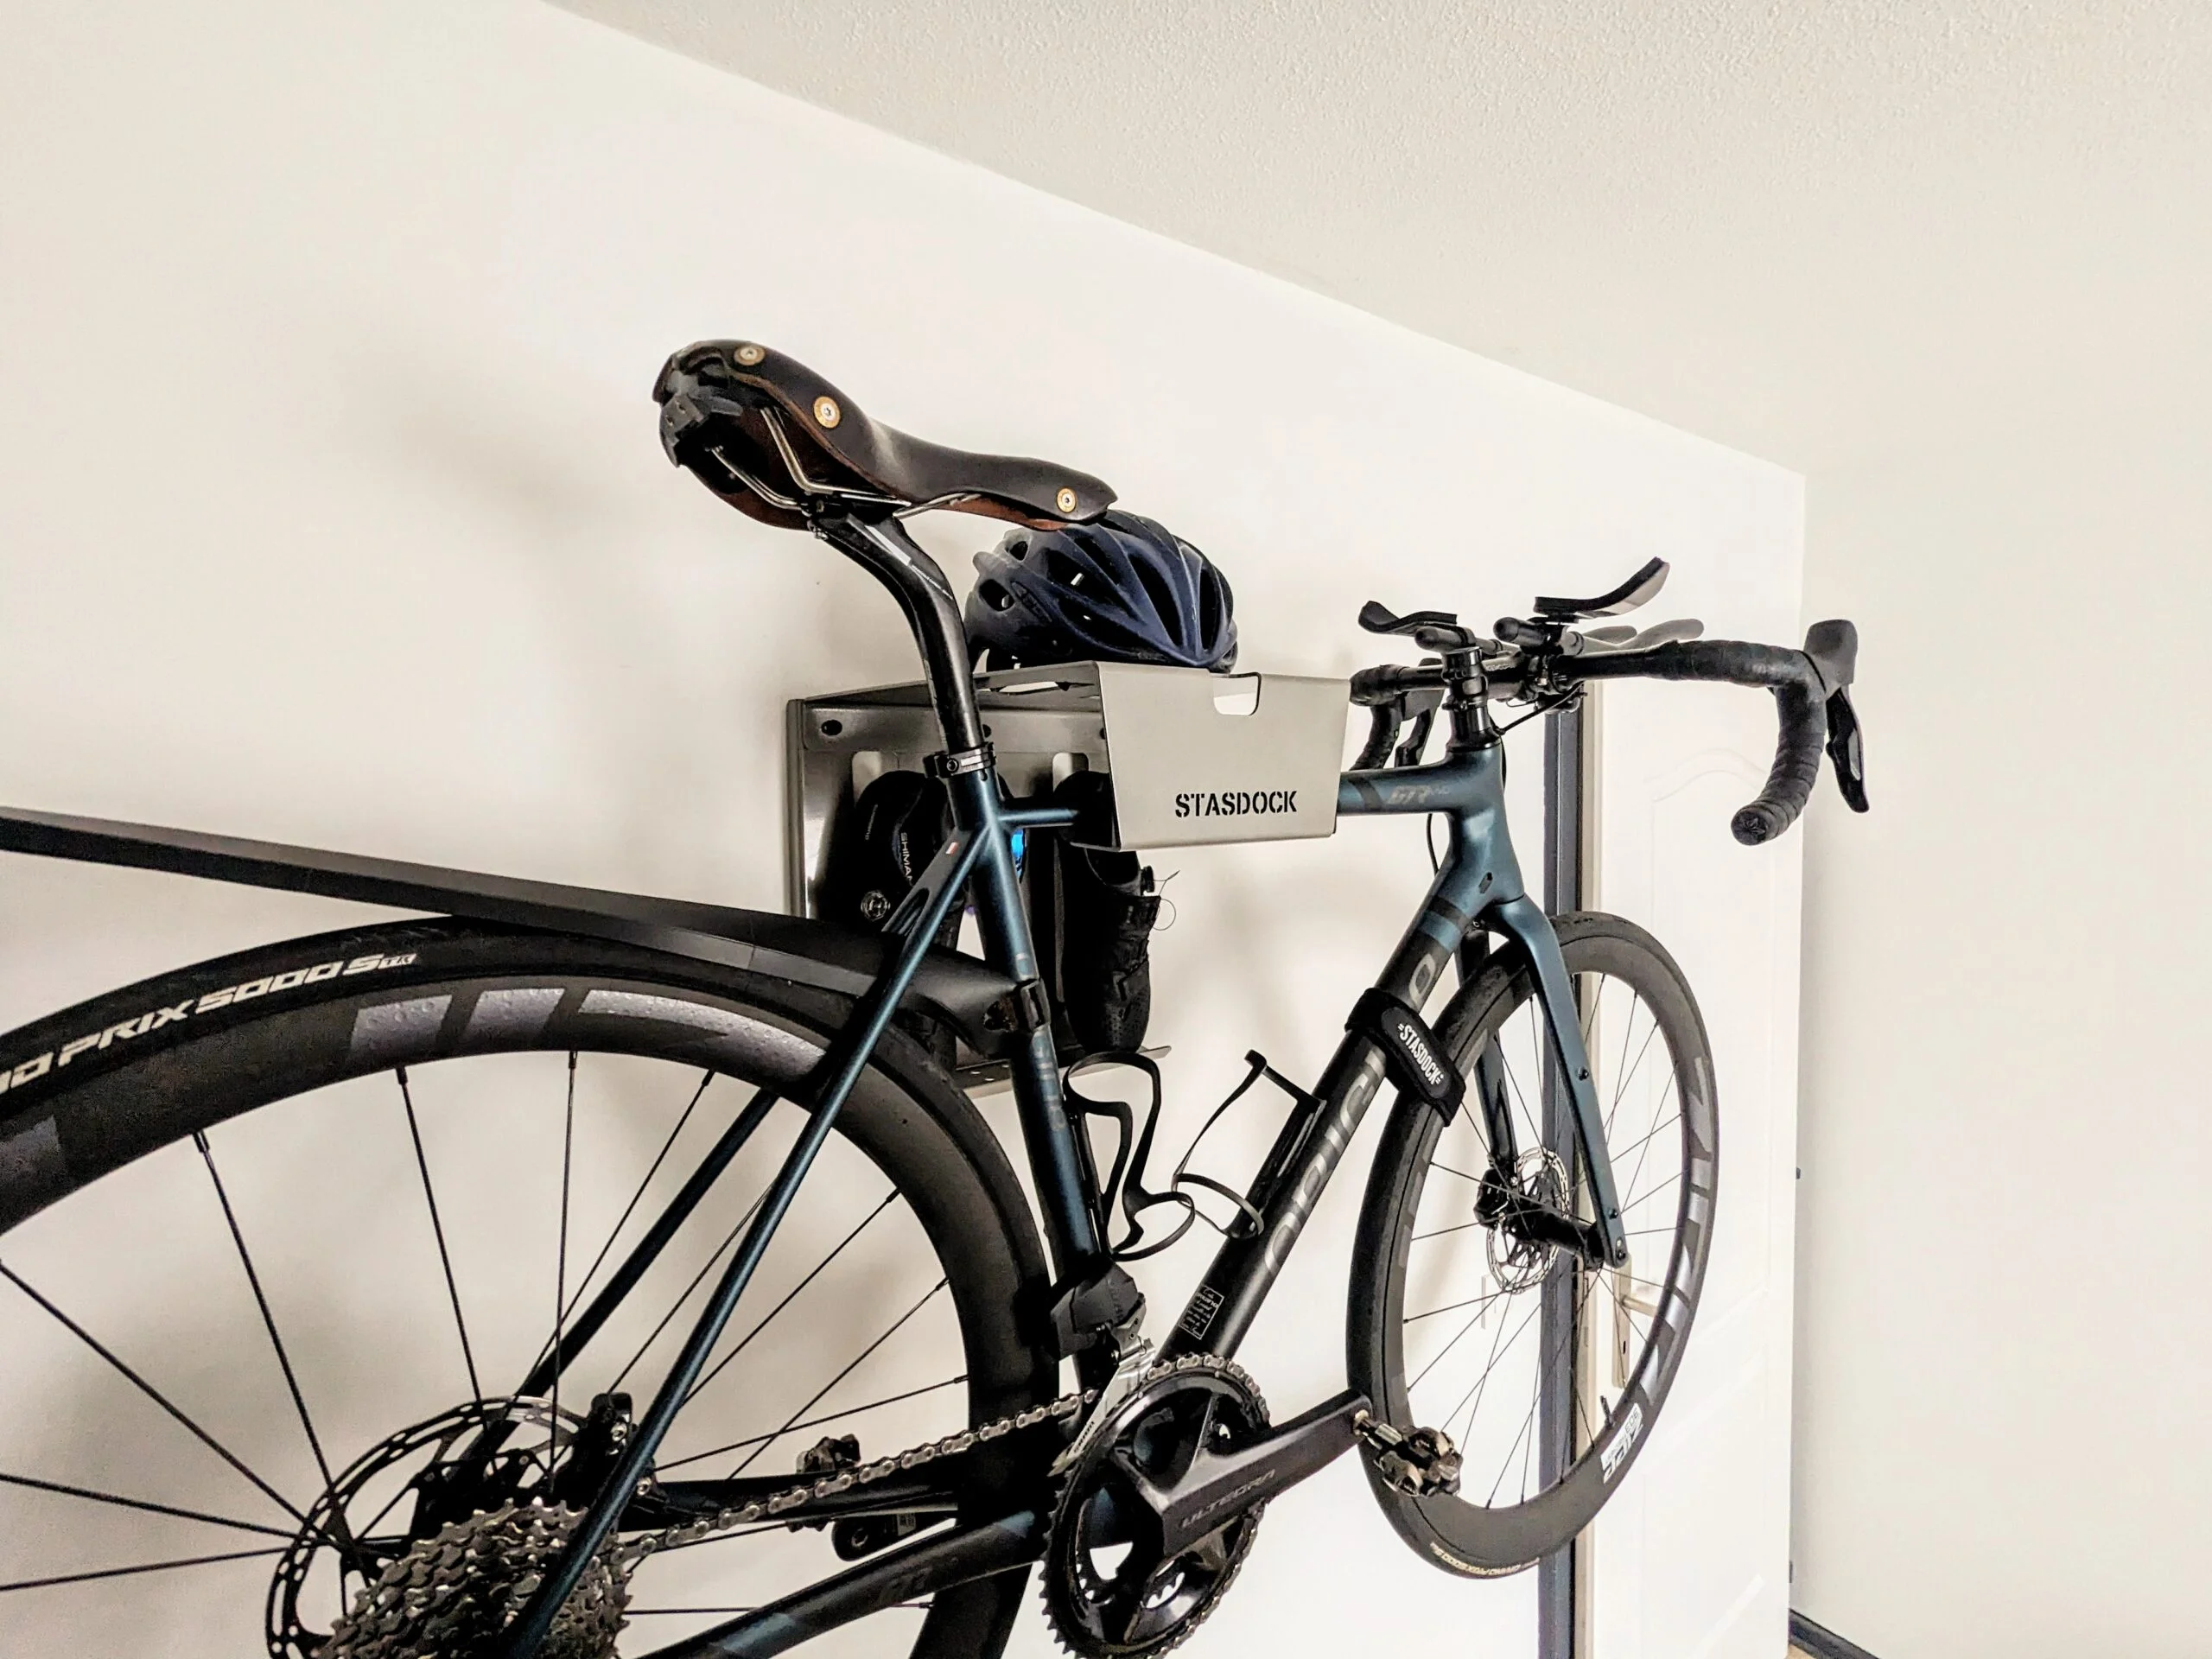 Système de suspension de vélo - Support mural vélo - Support vélo - Porte- vélos - Divers équipement ou accessoire vélo - Achat & prix